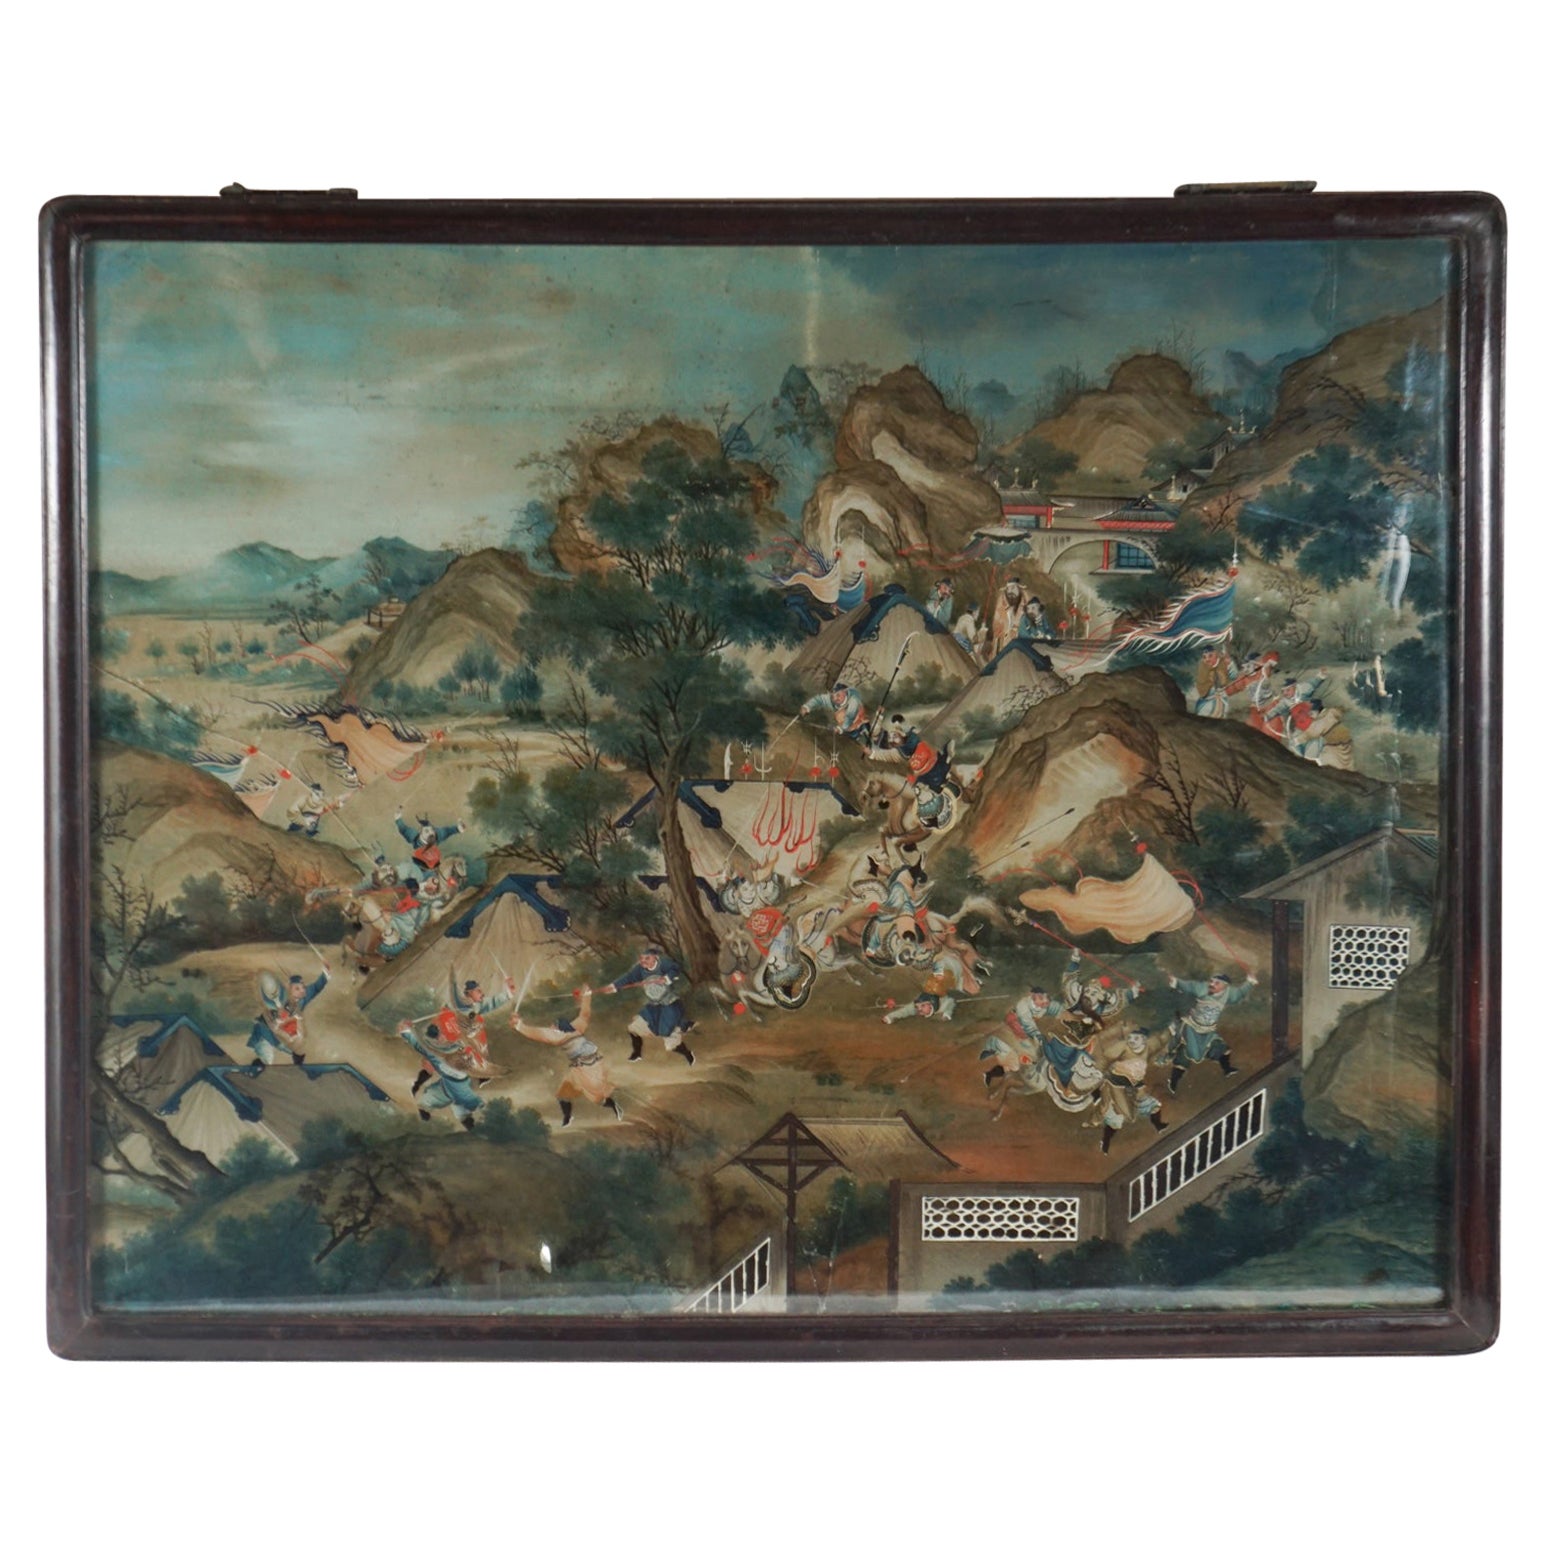 Chinesisches rückseitiges Gemälde des späten 18. Jahrhunderts auf Glas in seinem Originalrahmen